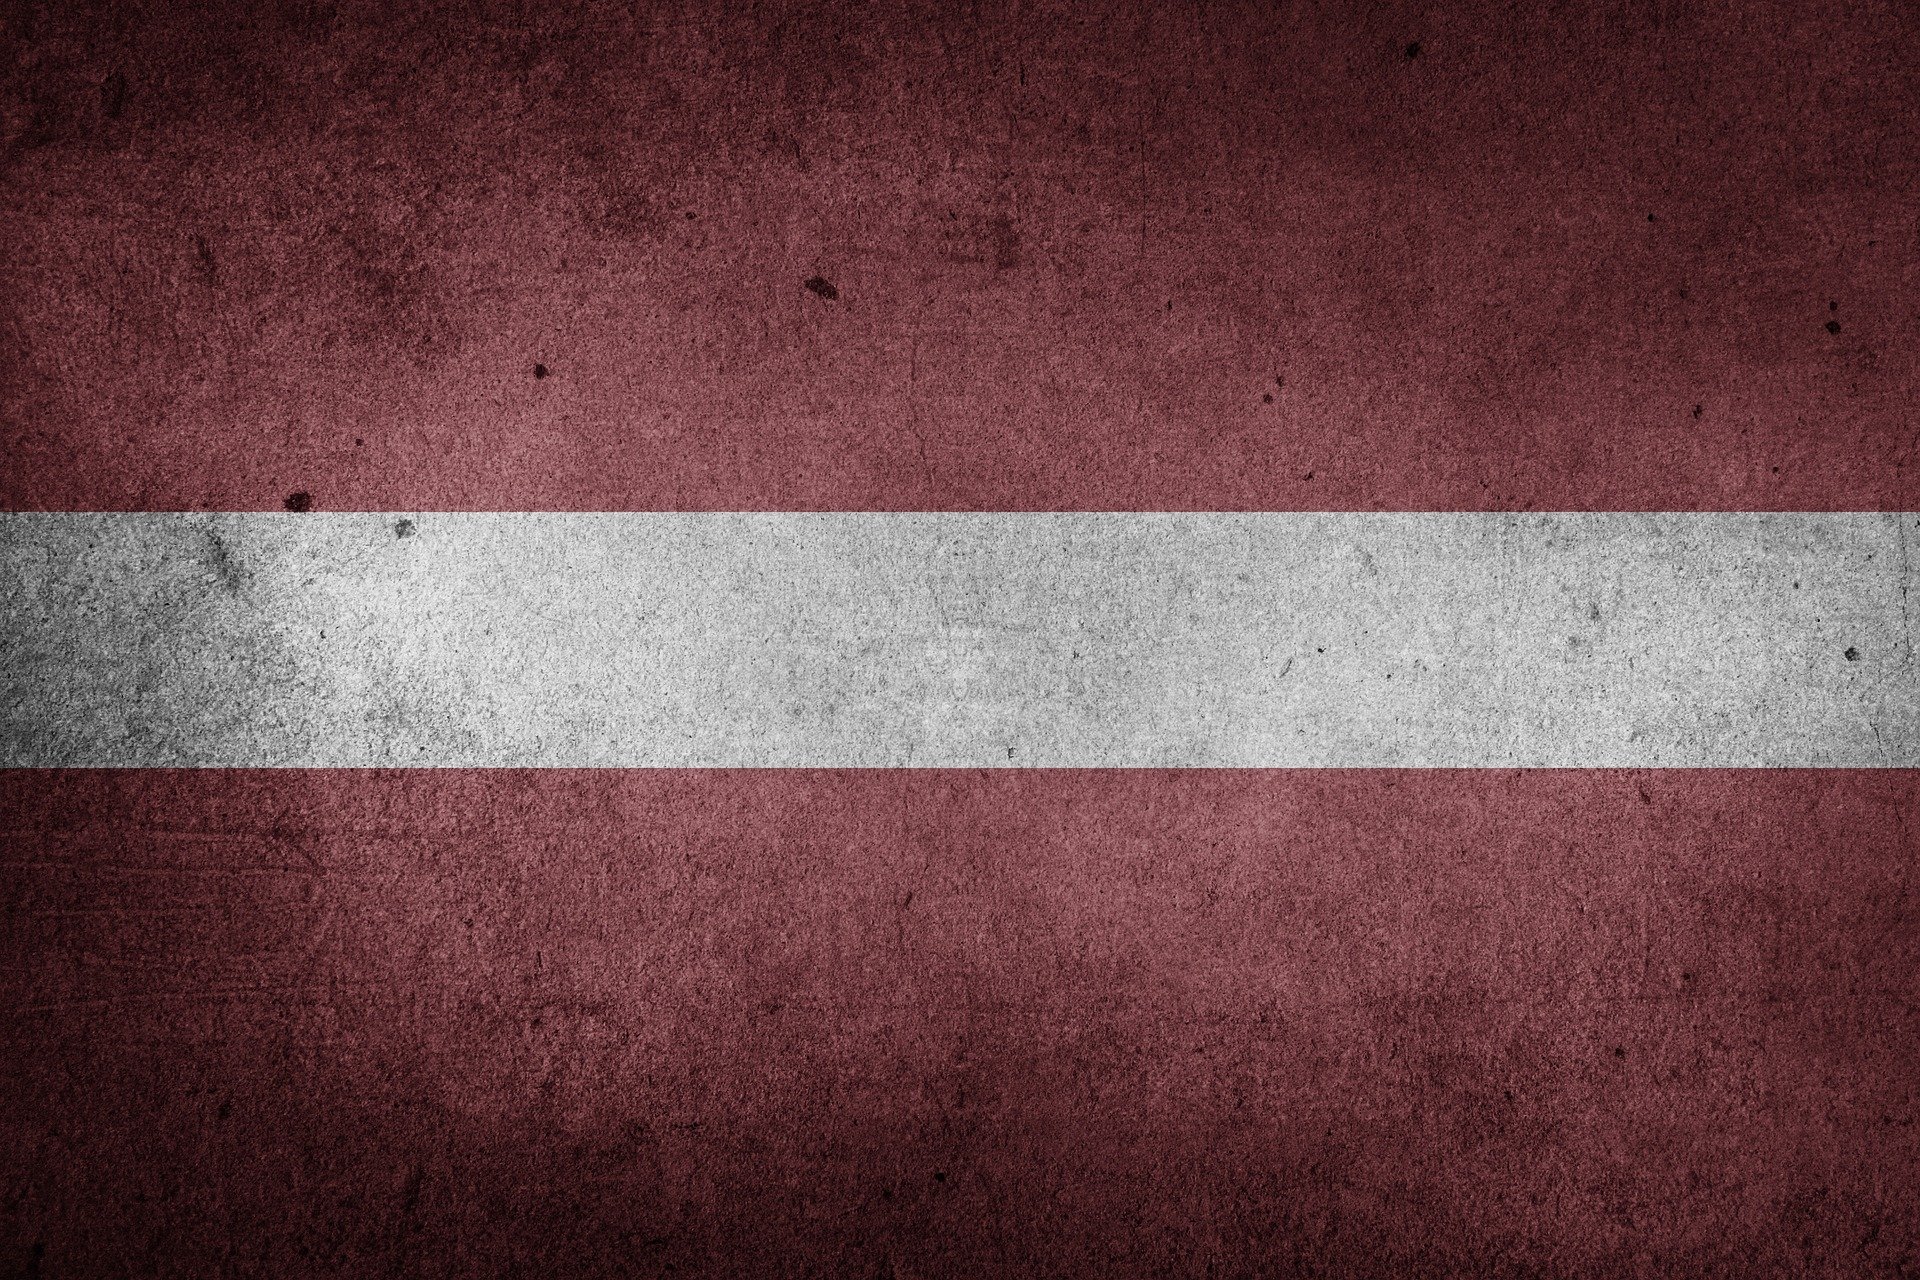 Letonia intră de luni în carantină